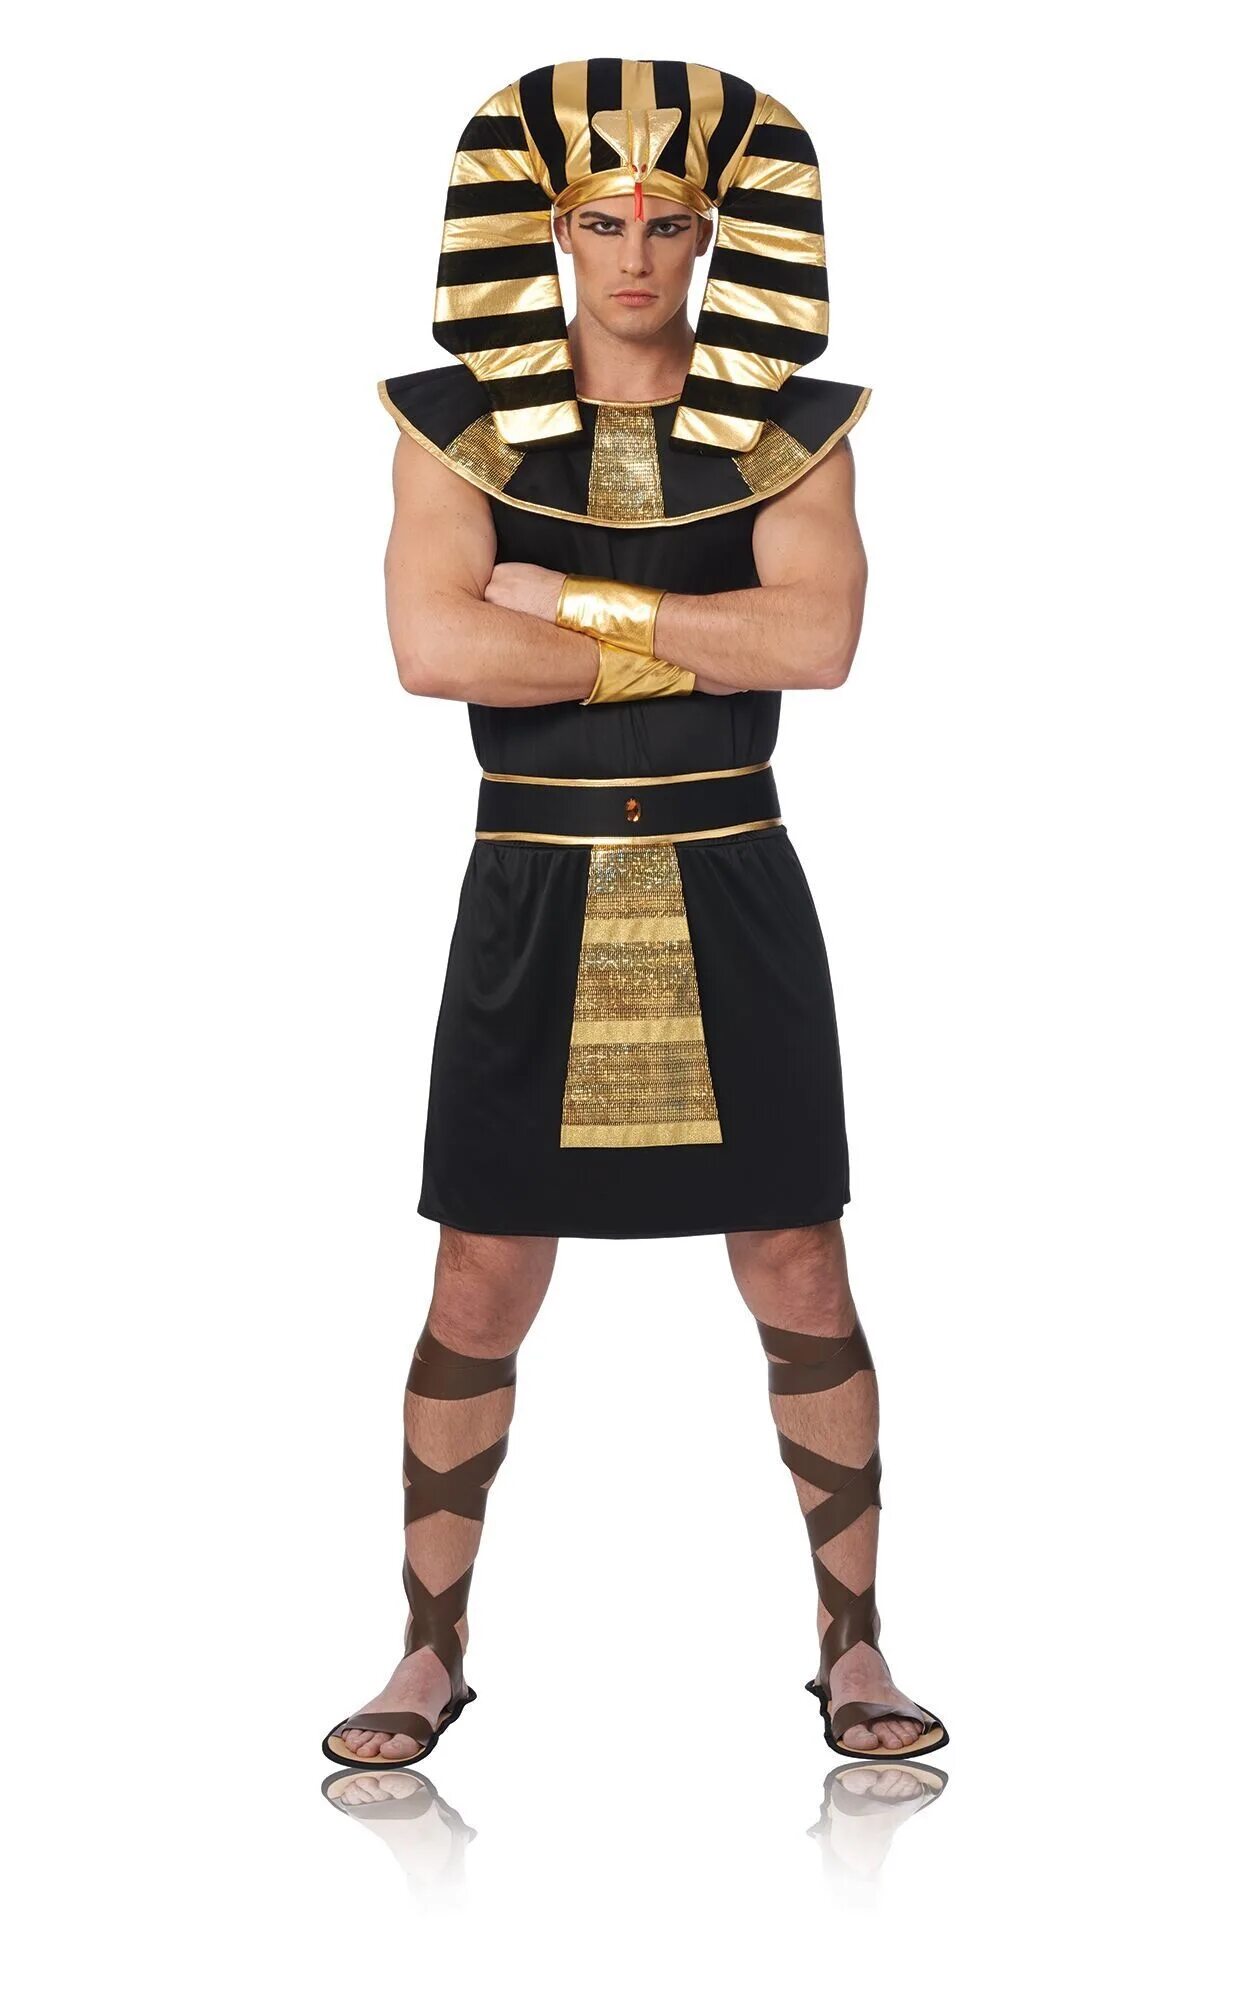 Король в полный рост. Фараон Тутанхамон в полный рост. Костюм фараона РАМЗЕС принц Египта. Египетский фараон в полный рост. Древний Египет фараон в полный рост.